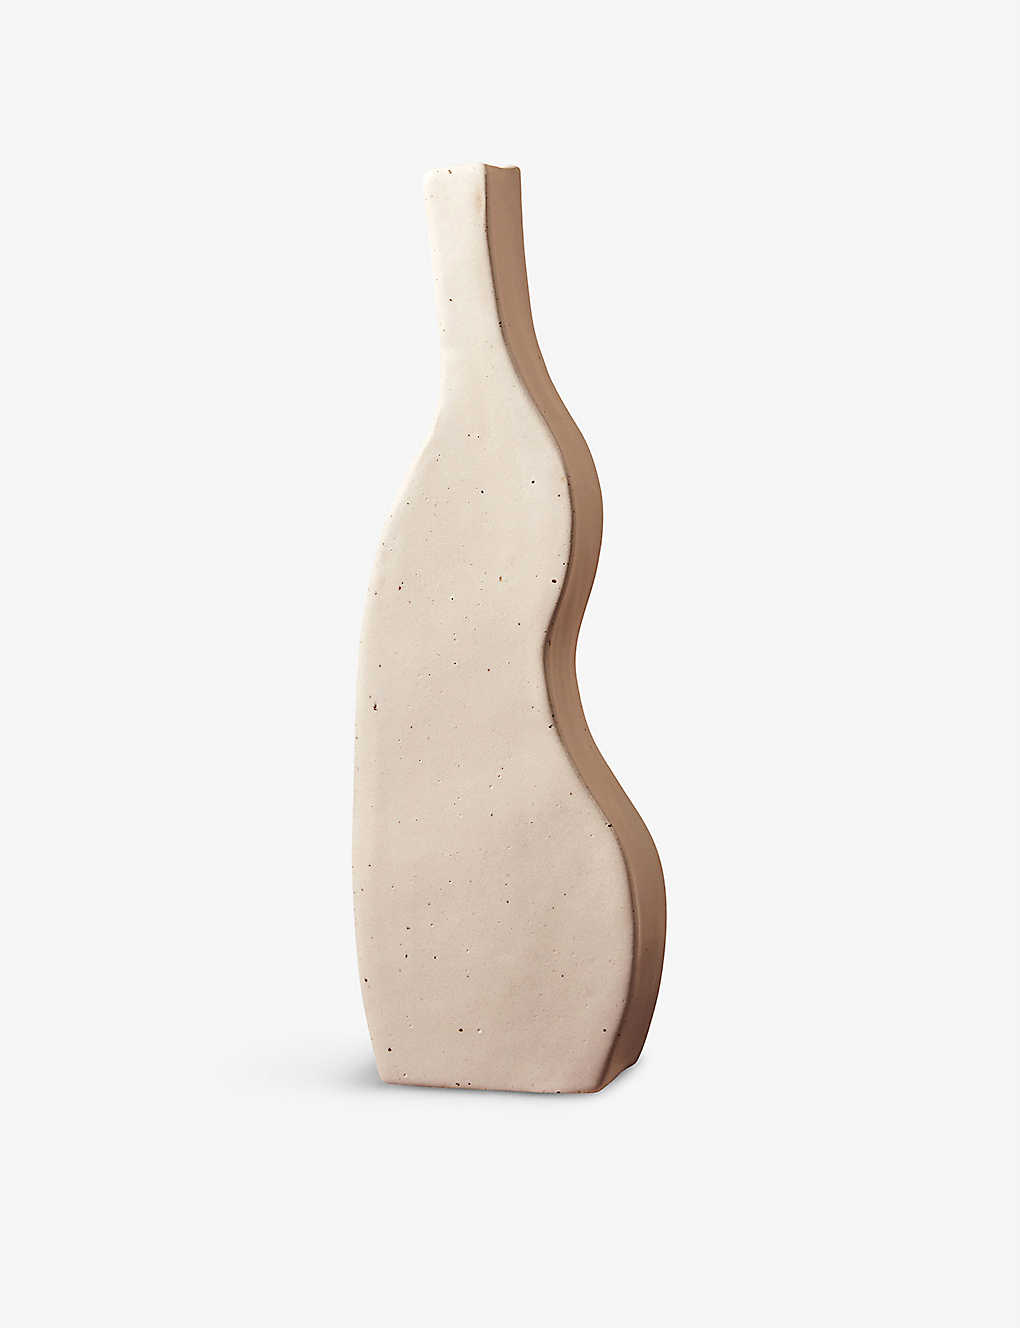 MIYELLE Bini スペクルド セラミックベース 33cm Bini speckled ceramic vase 33cm CREAM